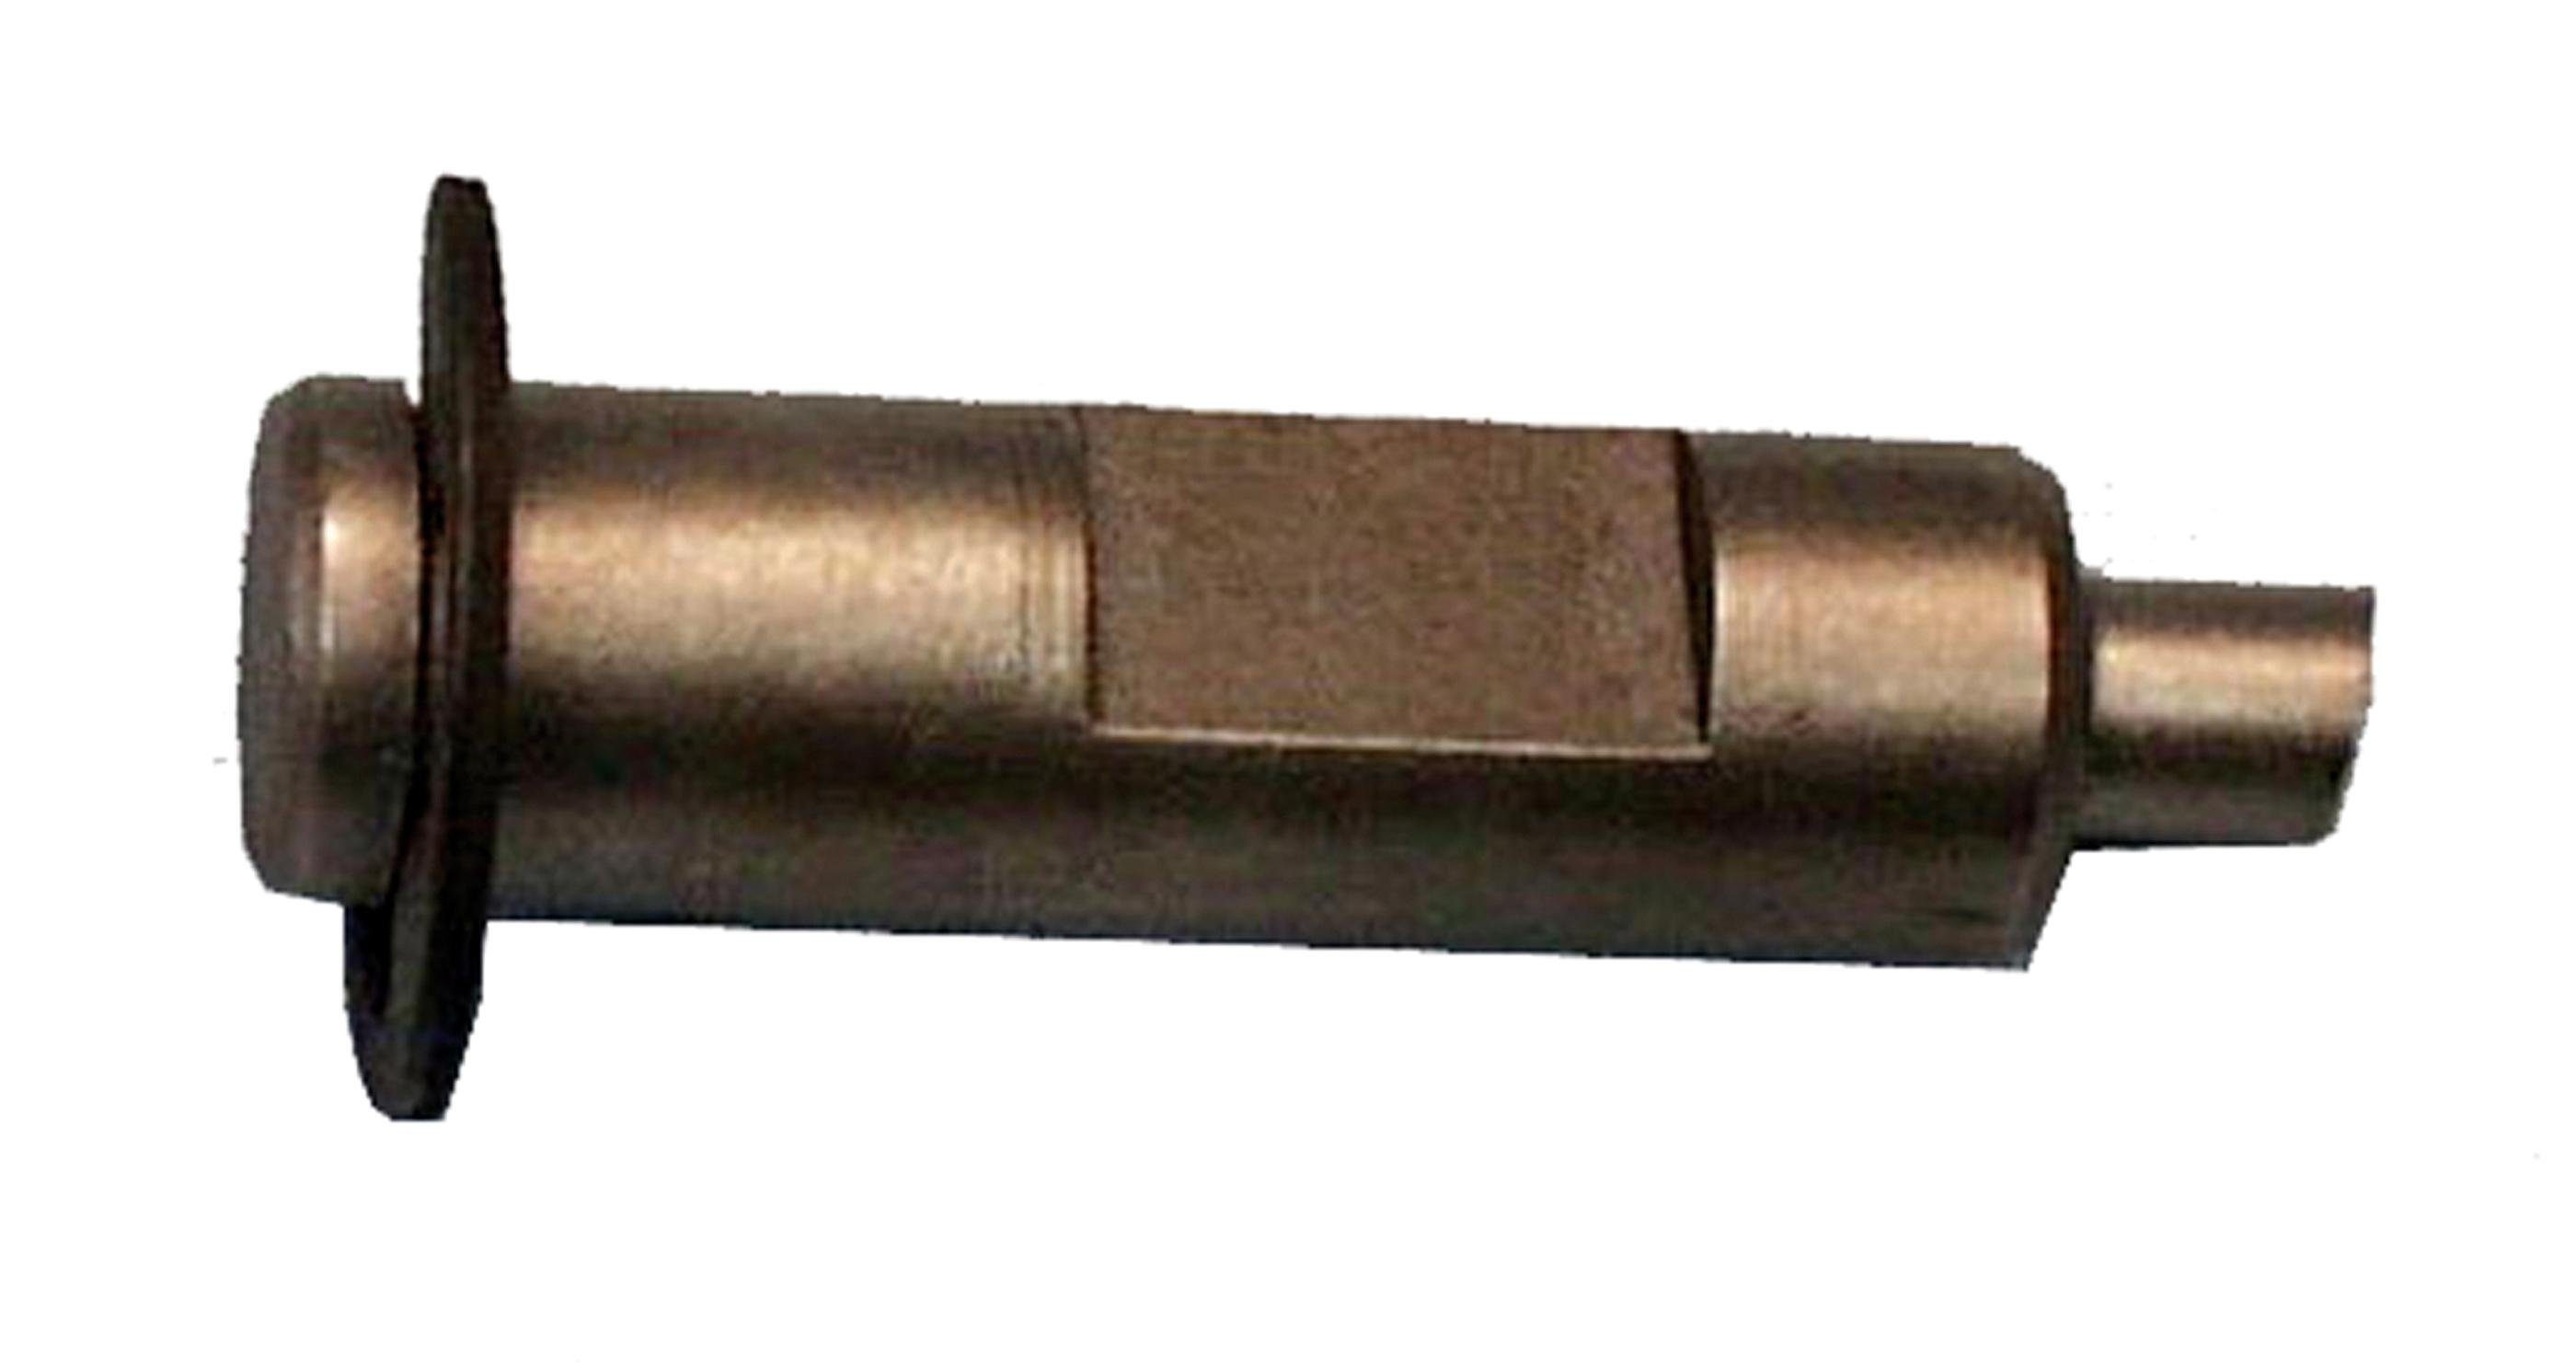 BGS technic Demontagewerkzeug Ersatzstempel für Absetz- und Lochzange, 6 mm